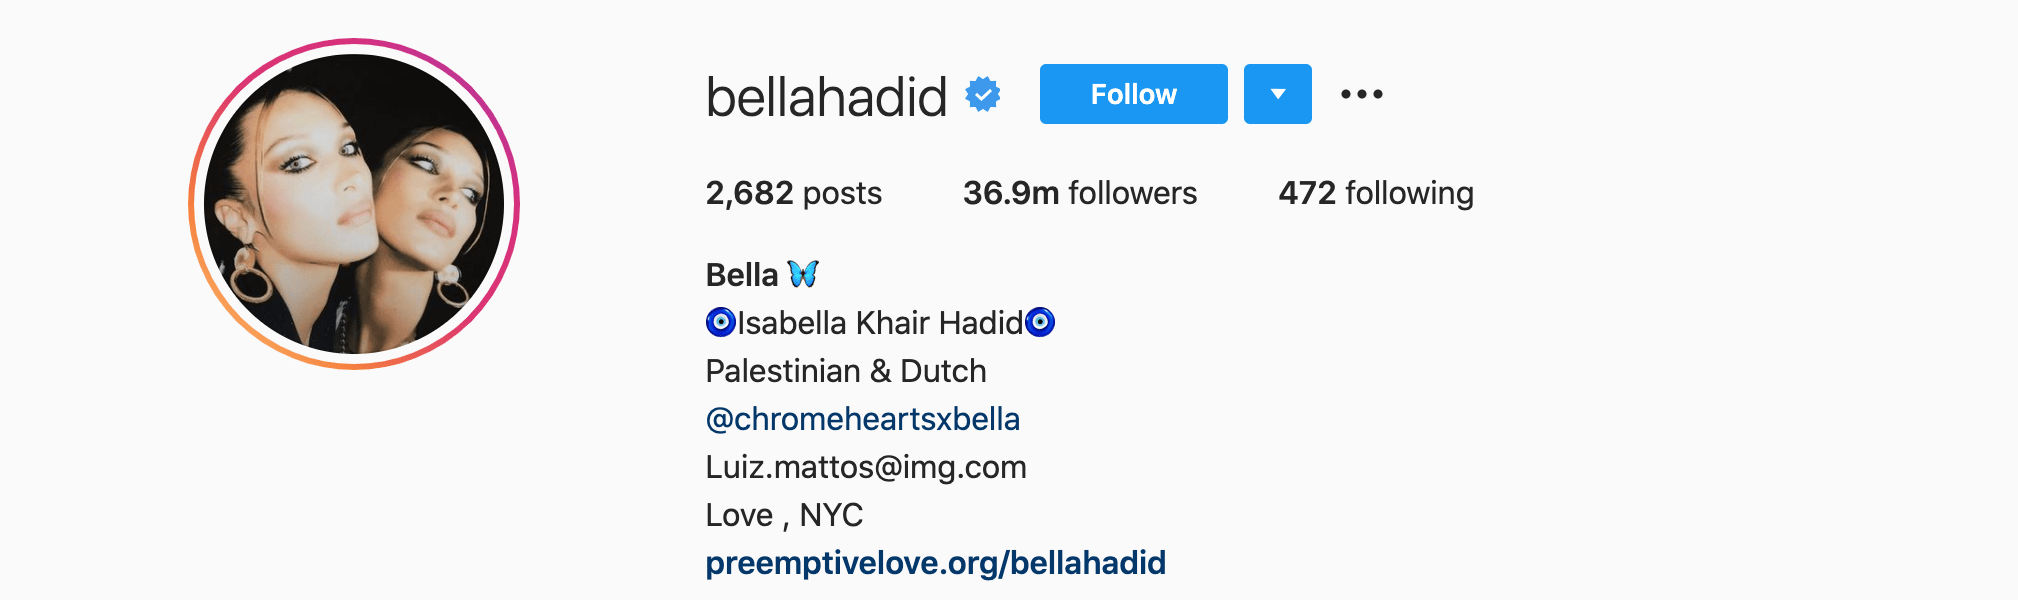 Top Instagram Influencers - BELLA HADID